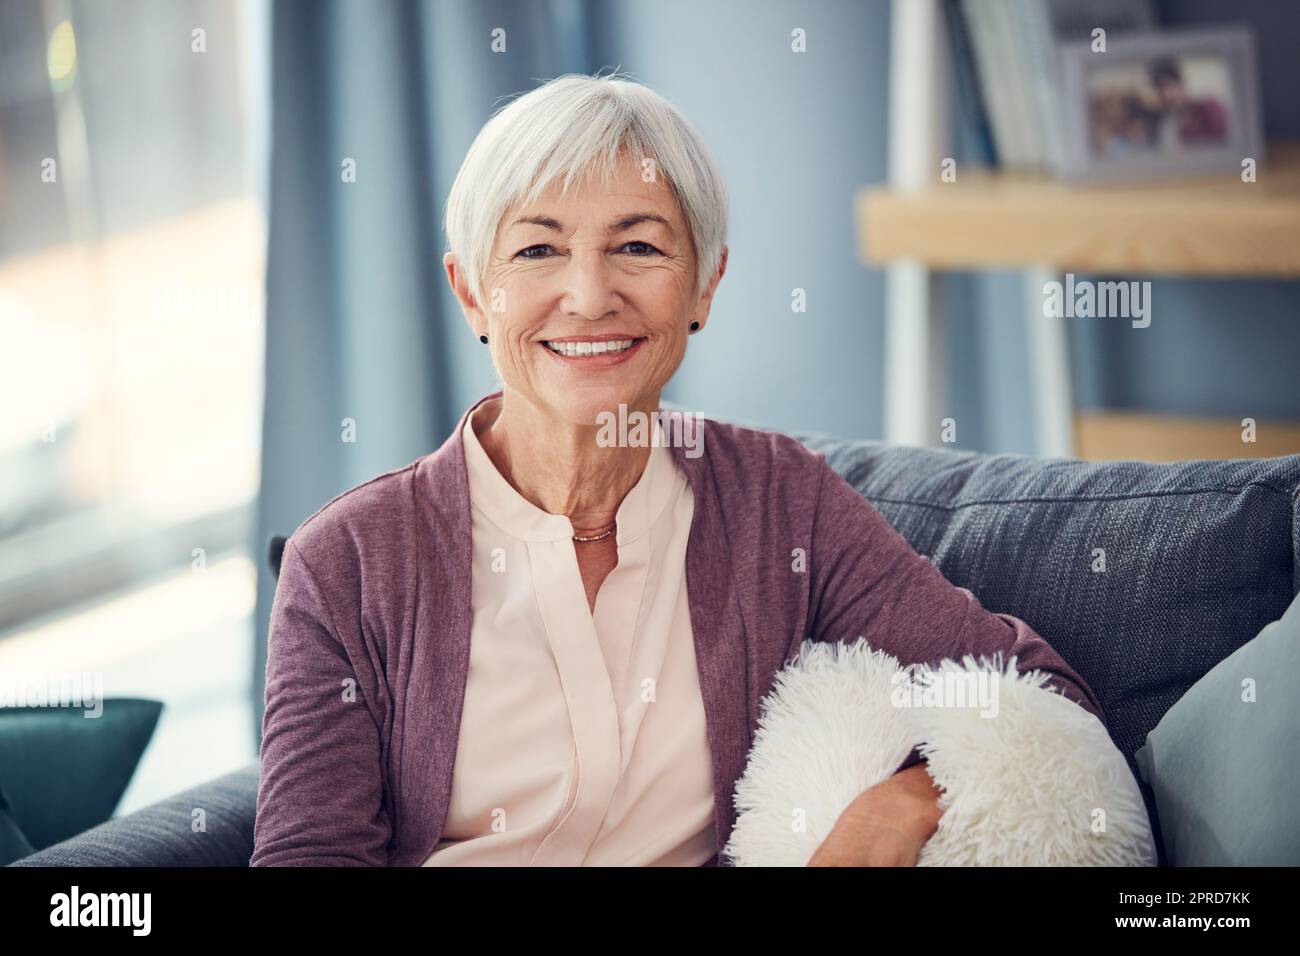 Soixante-dix est la nouvelle cinquante. Portrait court d'une femme âgée heureuse se reposant confortablement sur son canapé à la maison. Banque D'Images